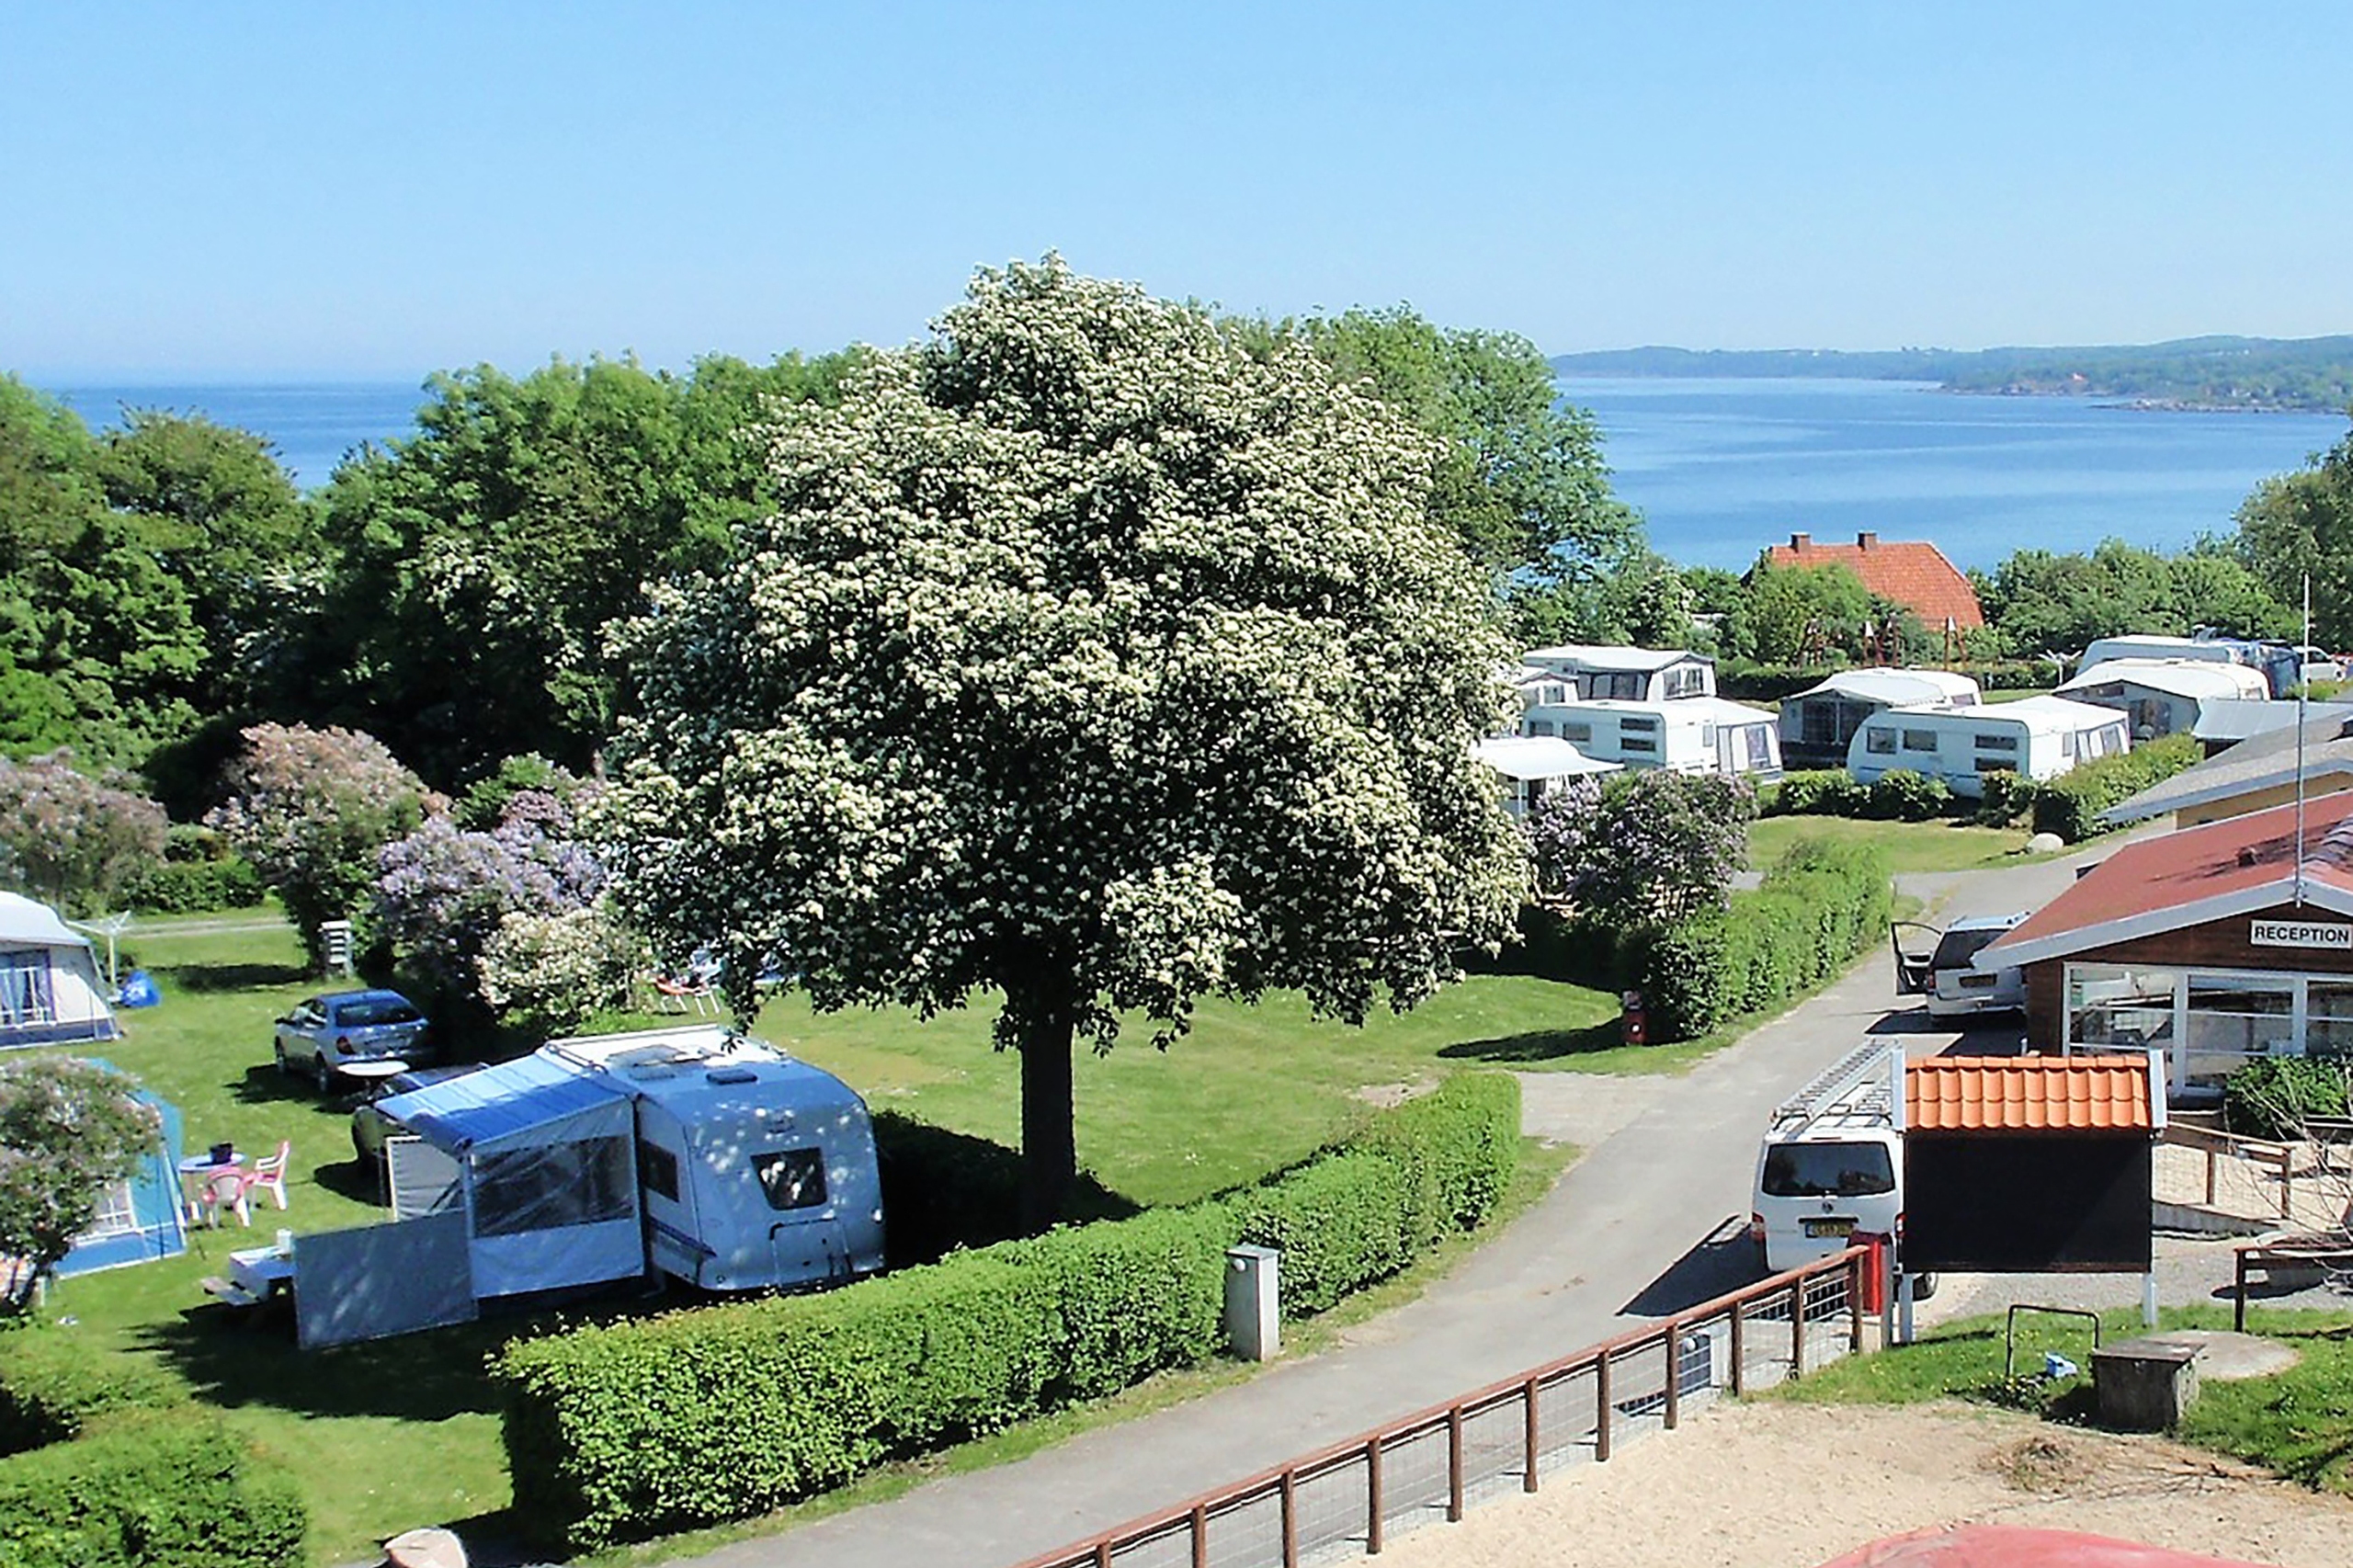 I fiskerbyen Allinge ligger en særlig smuk campingplads med en fantastisk udsigt over havet.